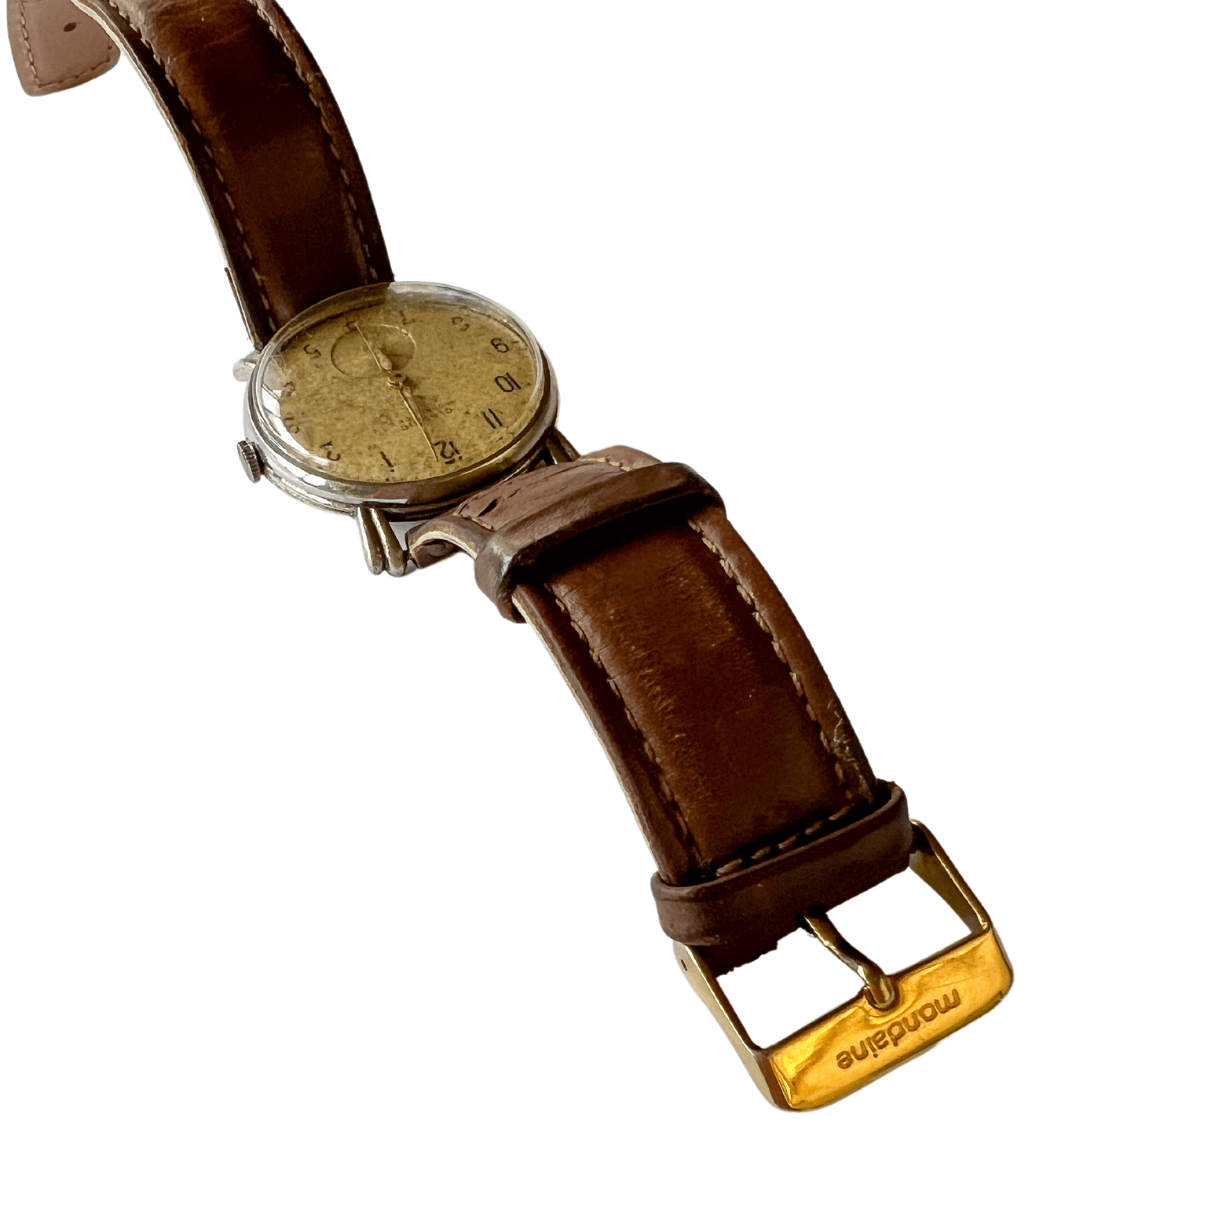 Relógio de Pulso Classic Suíço dos anos 1980